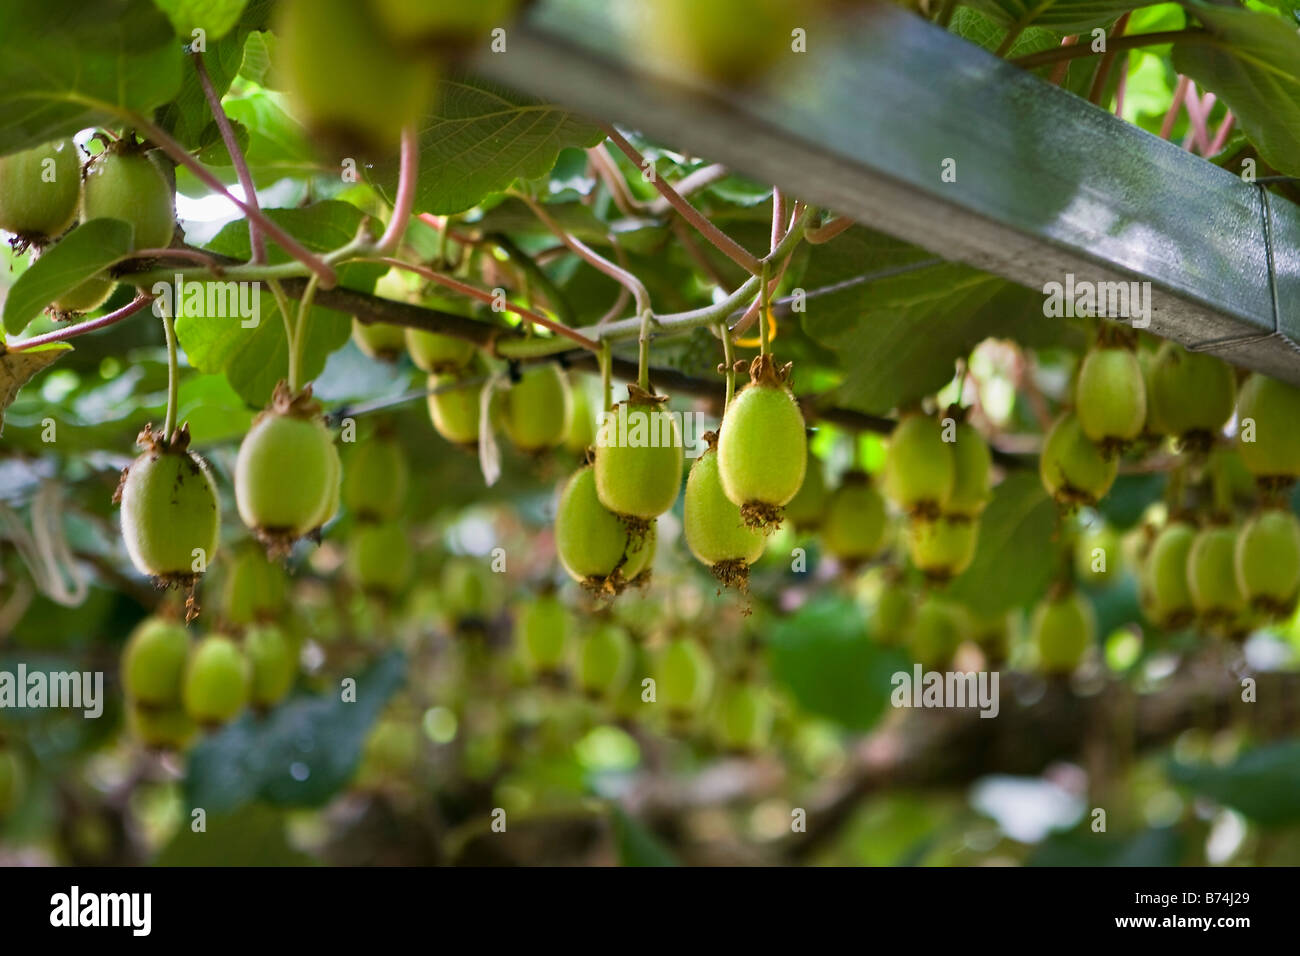 New Zealand, North Island, Tauranga, kiwi fruit growing. Stock Photo